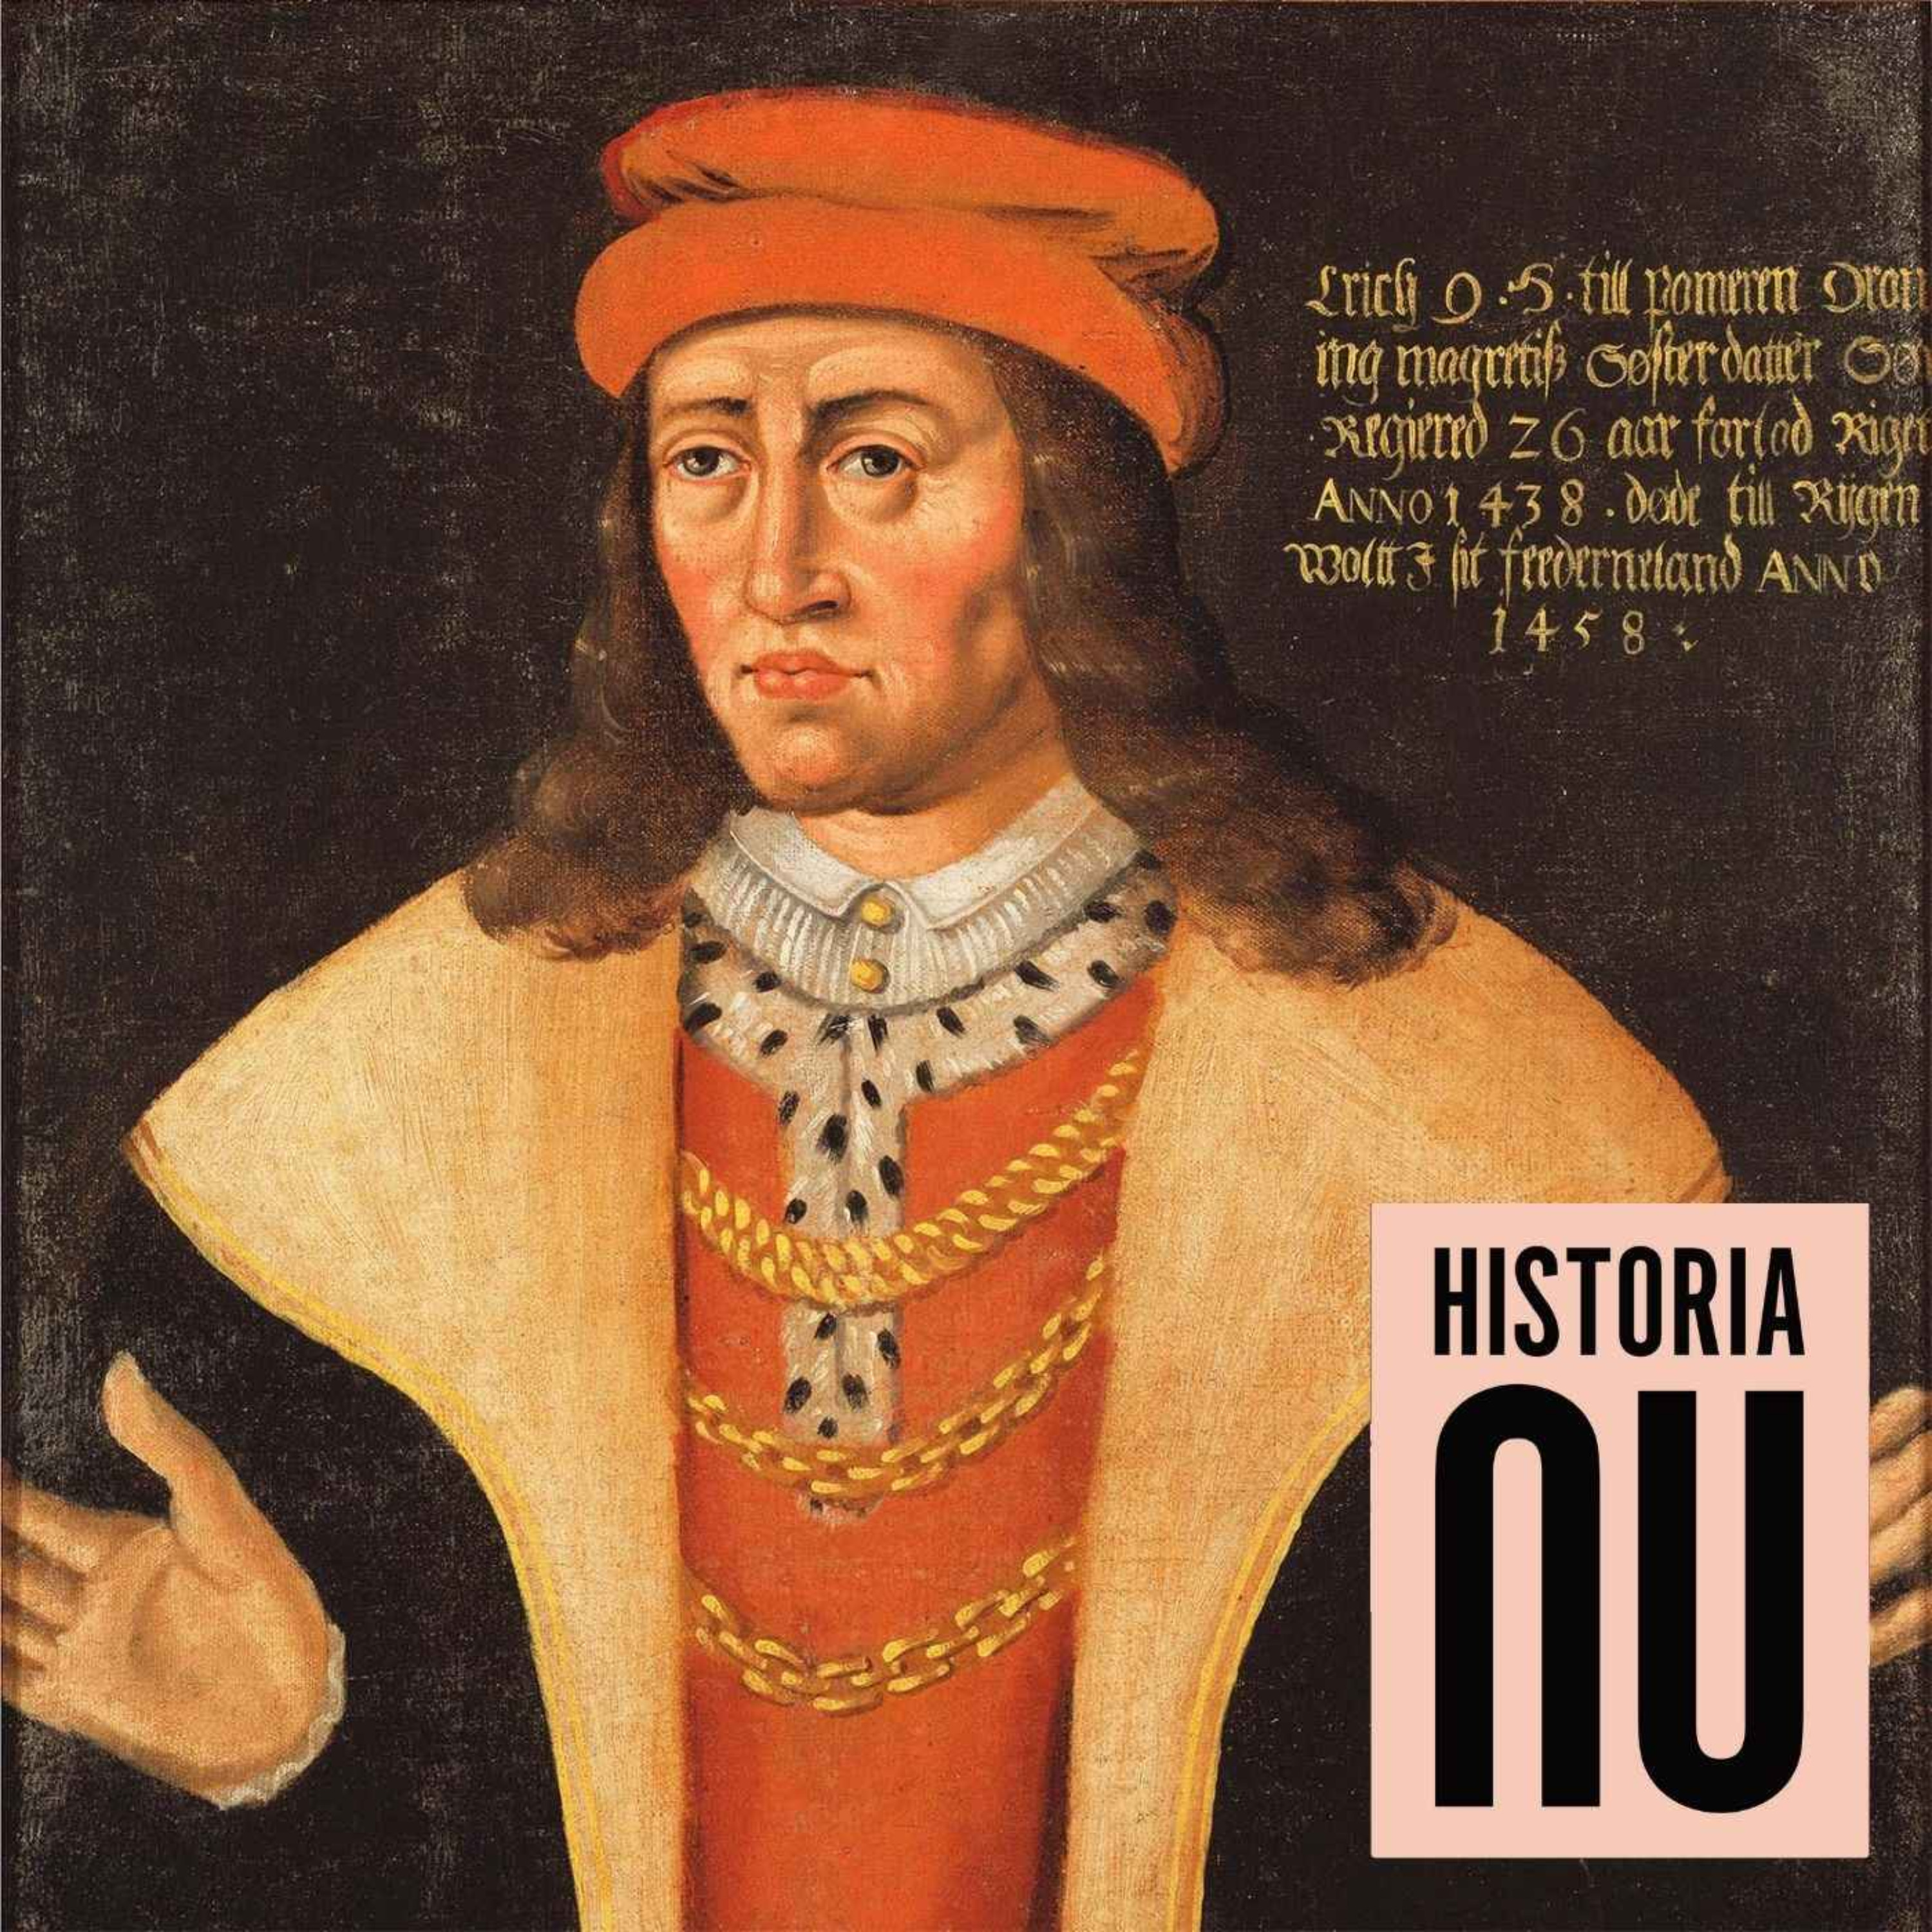 Erik av Pommern – från hertig till unionskung och sjörövare